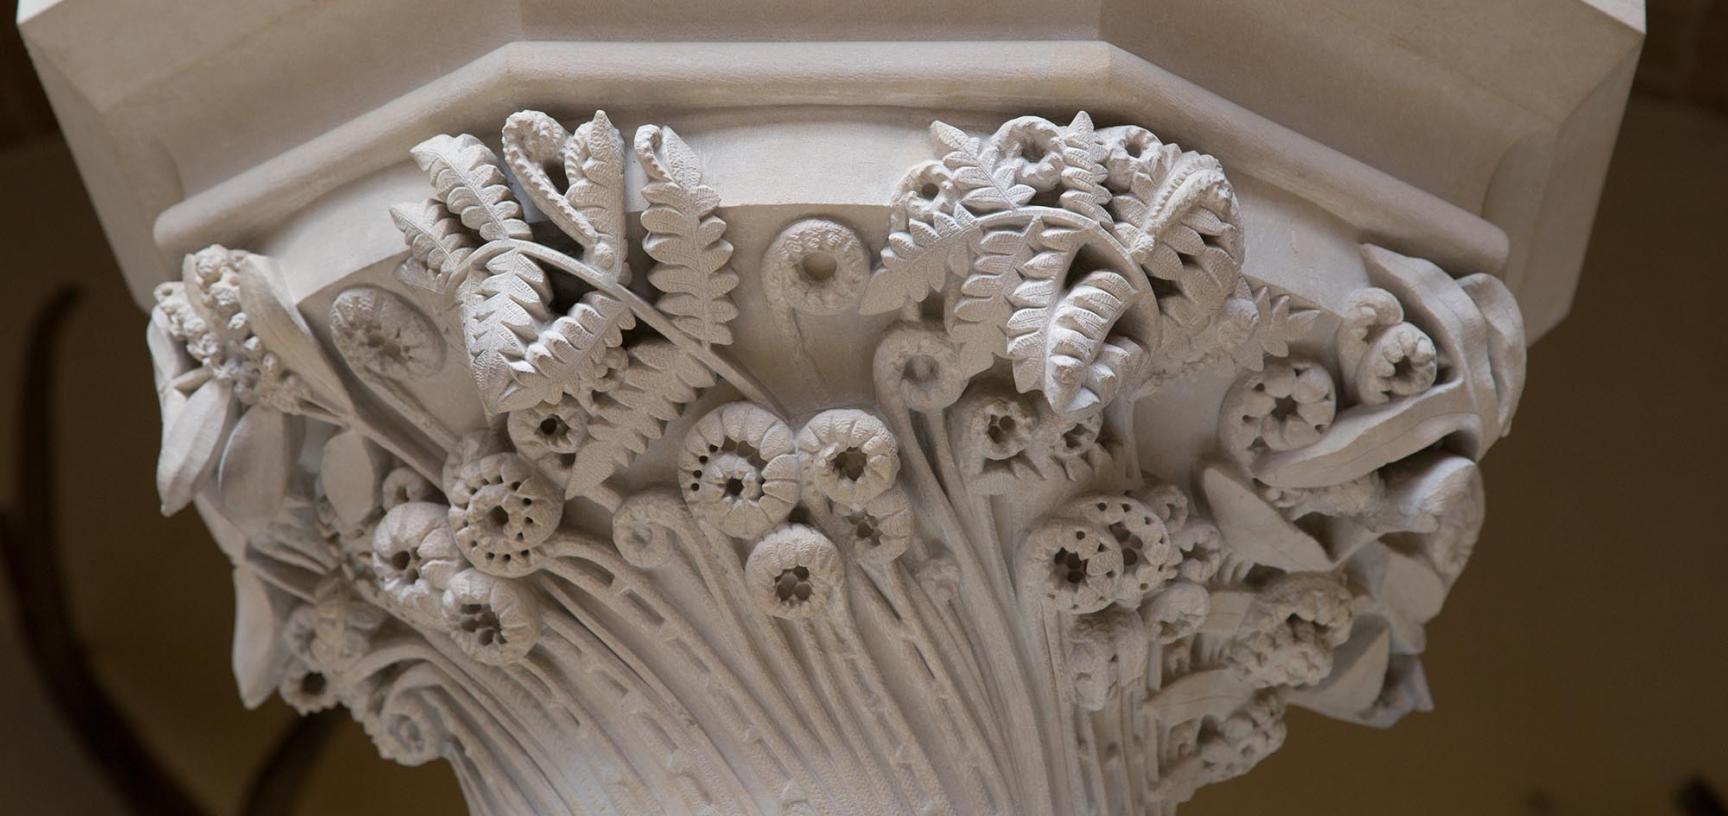 Carved botanical capital depicting British ferns